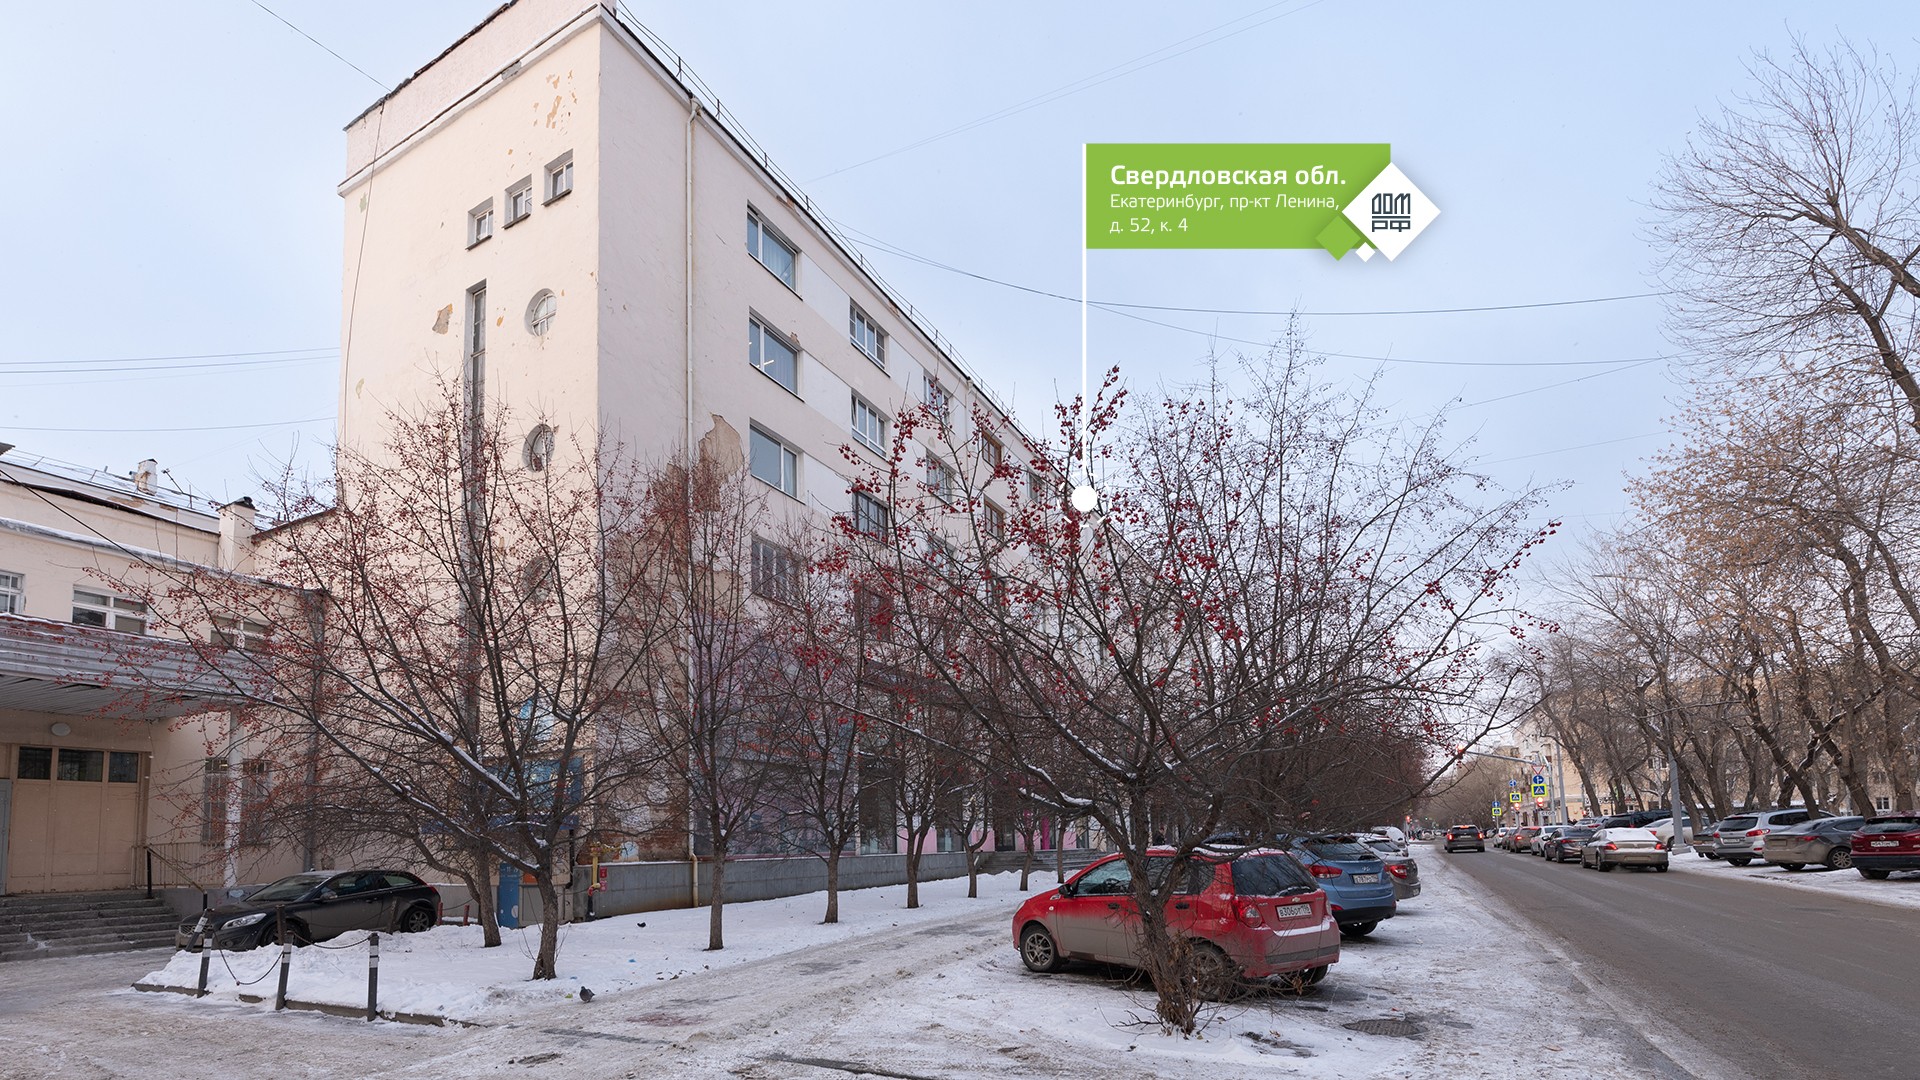 Продажи недвижимости в Екатеринбурге сегодня.